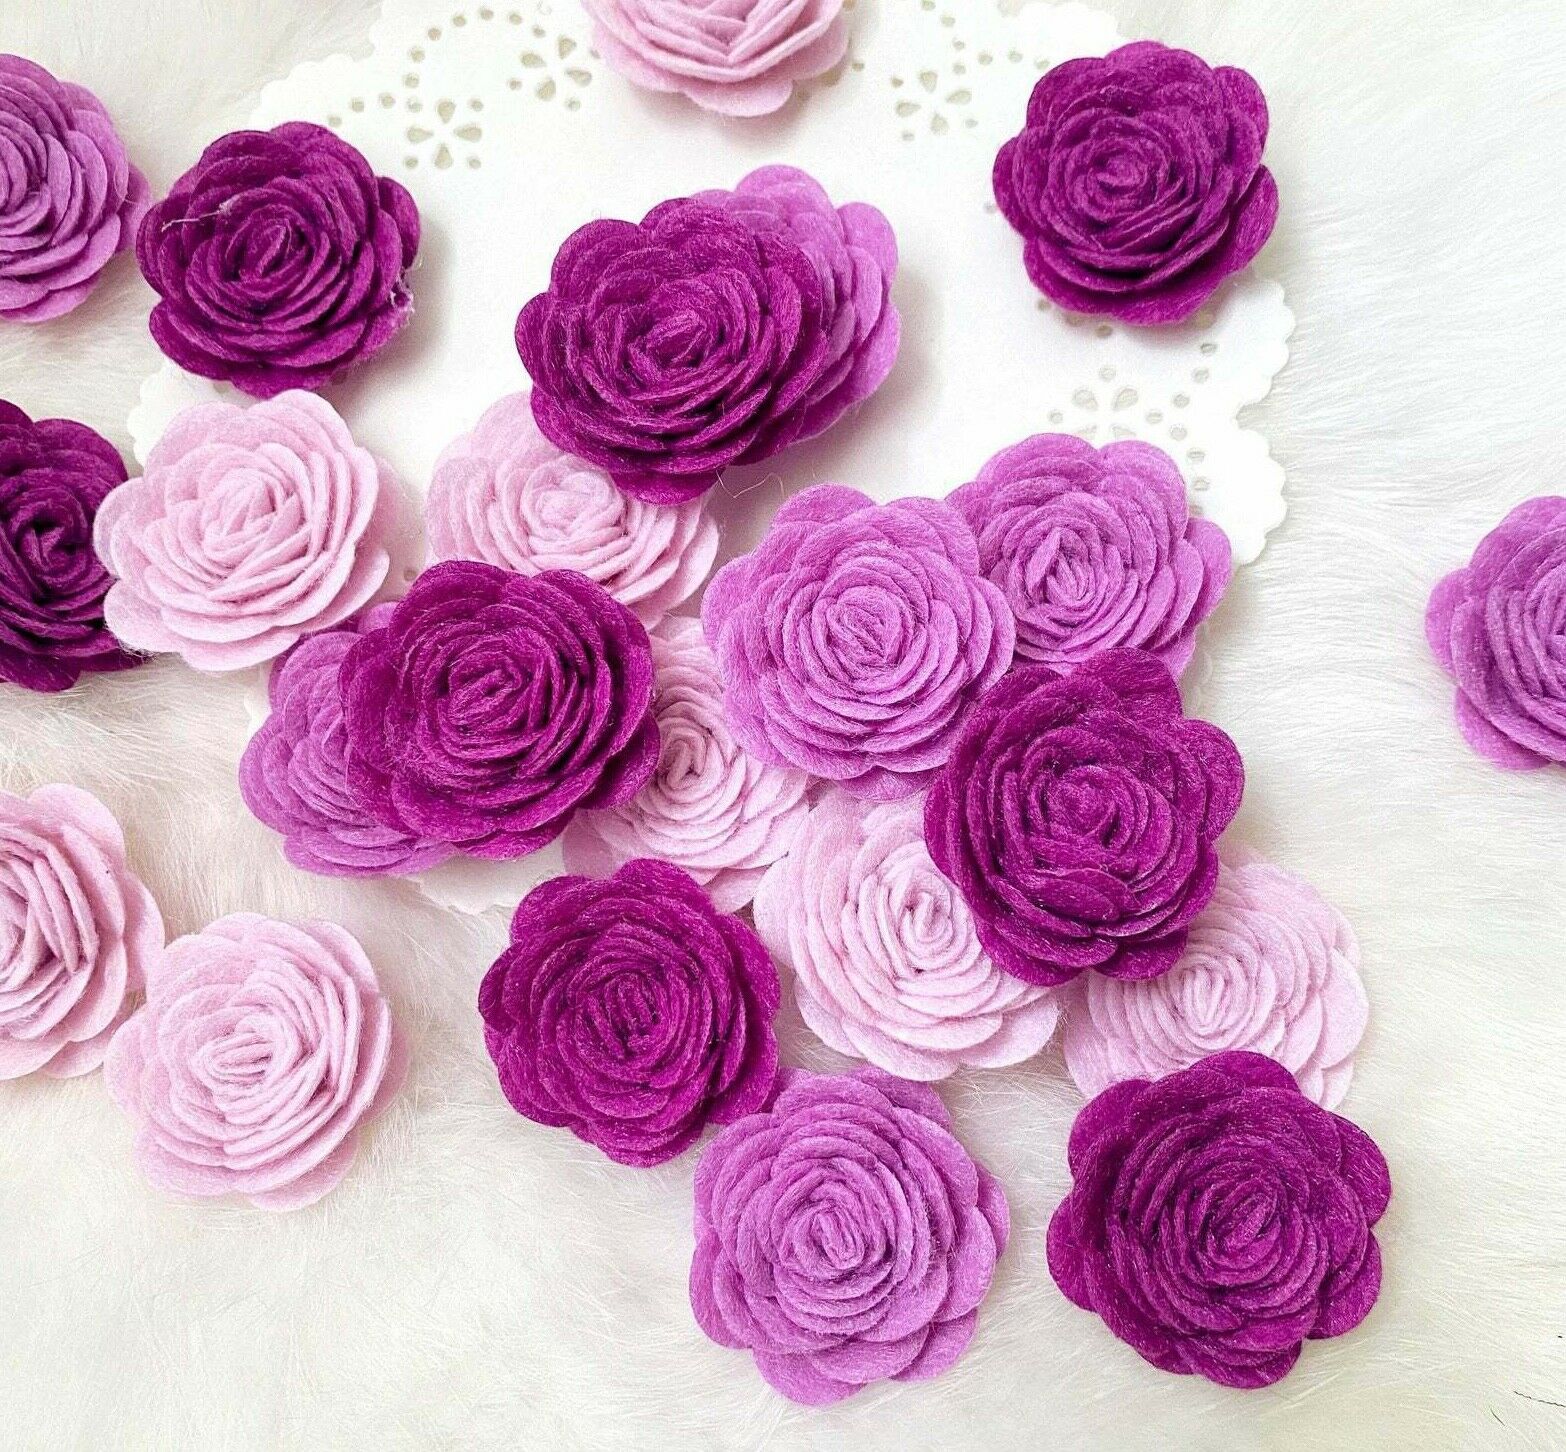 Purple Felt Roses Wool Felt Flowers Handmade Headband Flower Applique Sew On